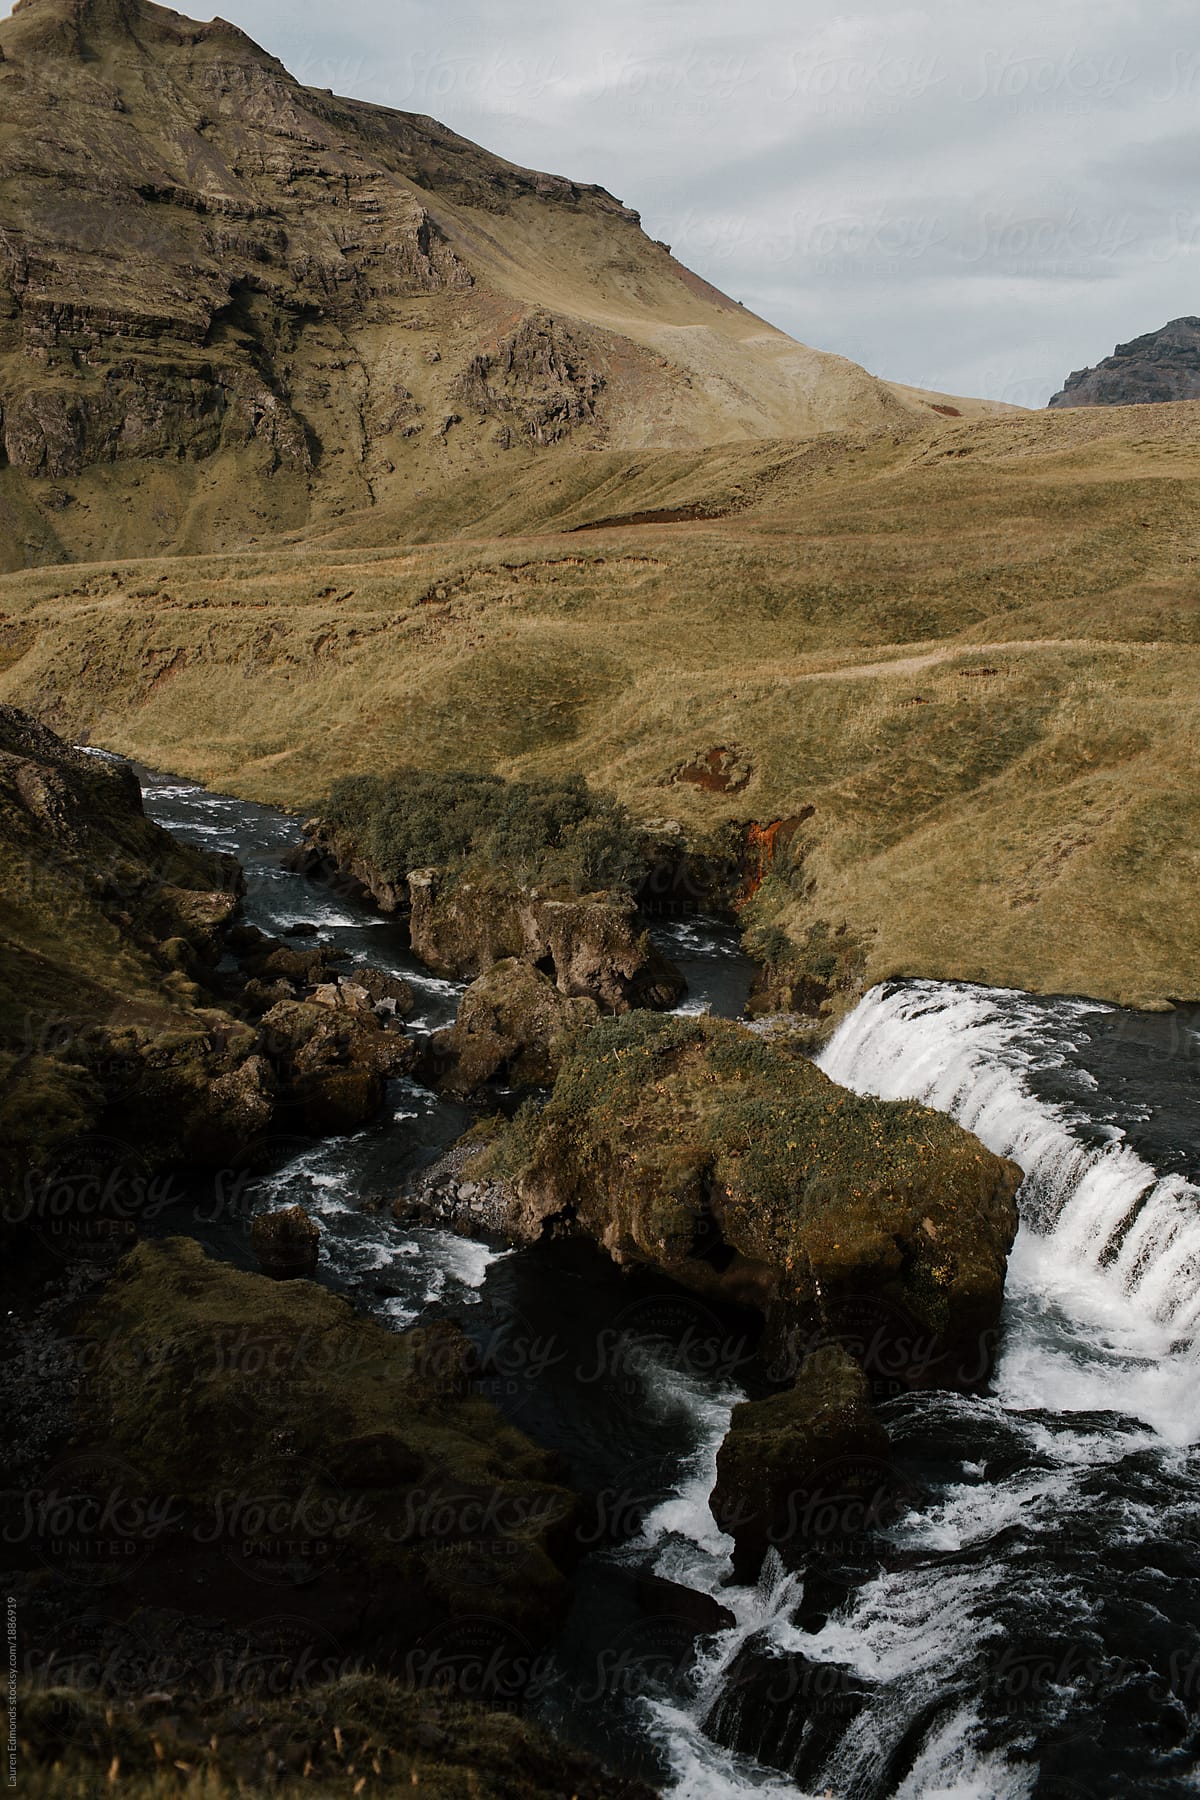 Dramatic Iceland landscape